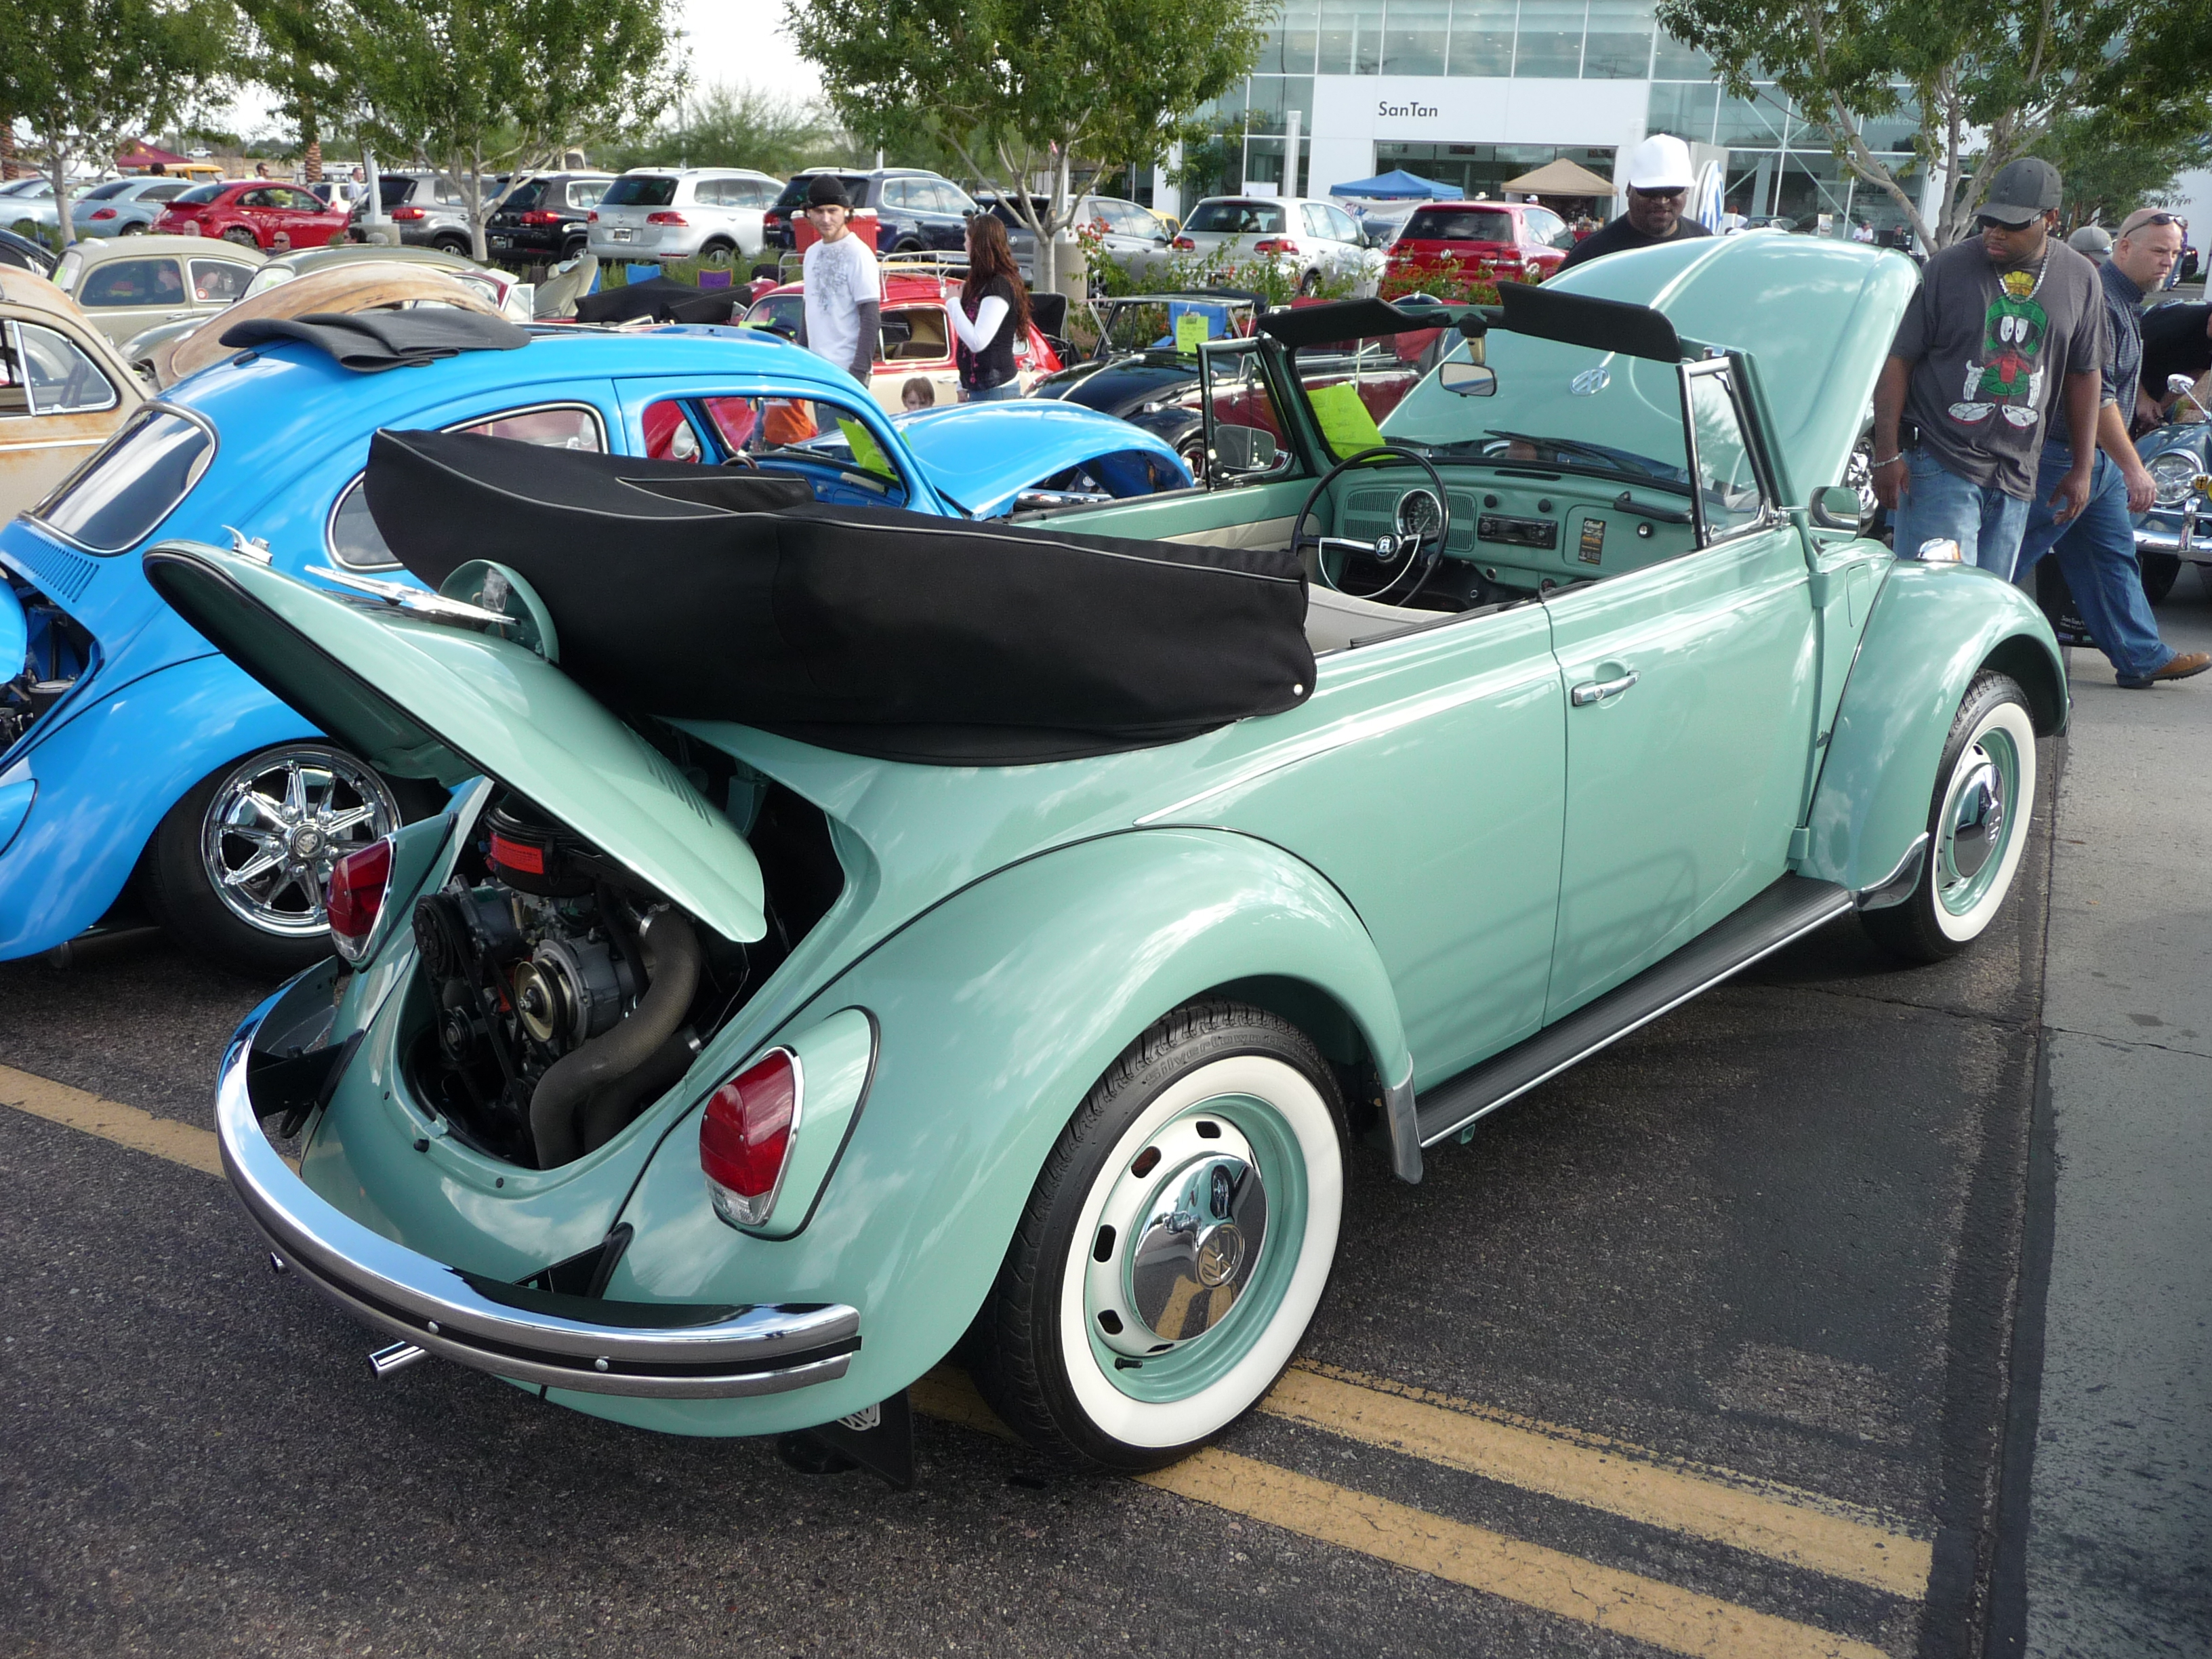 1969 Volkswagen Type 1 Beetle Convertible | Flickr - Photo Sharing!